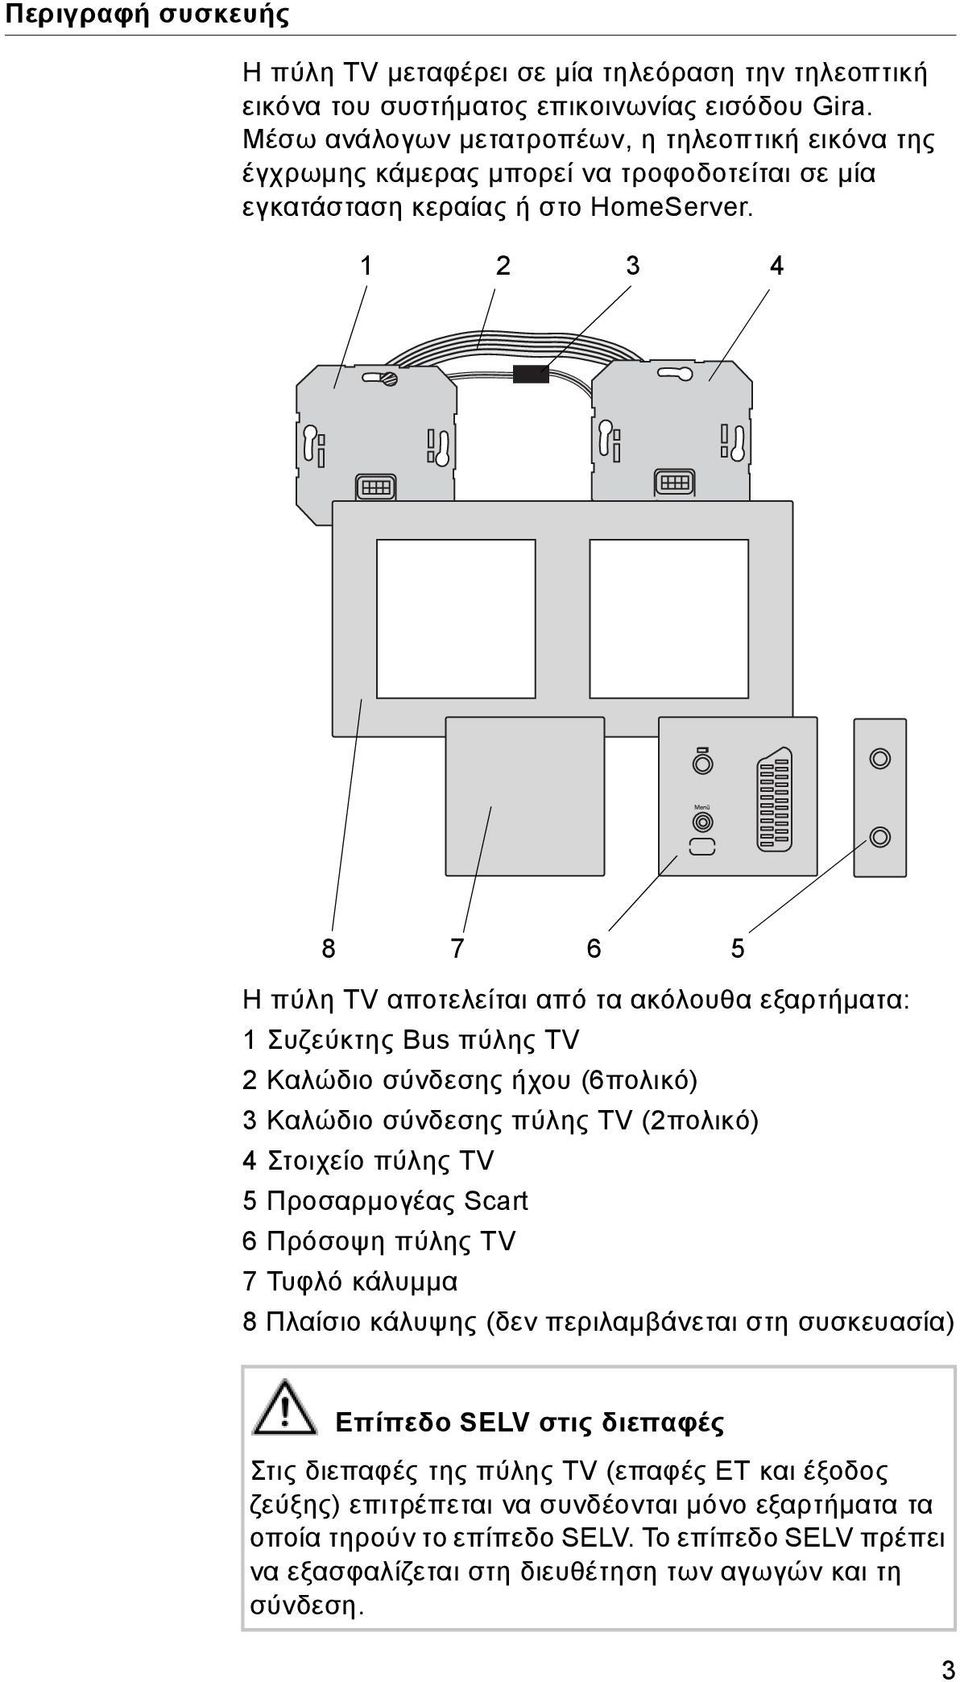 1 2 3 4 8 7 6 5 Η πύλη TV αποτελείται από τα ακόλουθα εξαρτήματα: 1 Συζεύκτης Bus πύλης TV 2 Καλώδιο σύνδεσης ήχου (6πολικό) 3 Καλώδιο σύνδεσης πύλης TV (2πολικό) 4 Στοιχείο πύλης TV 5 Προσαρμογέας